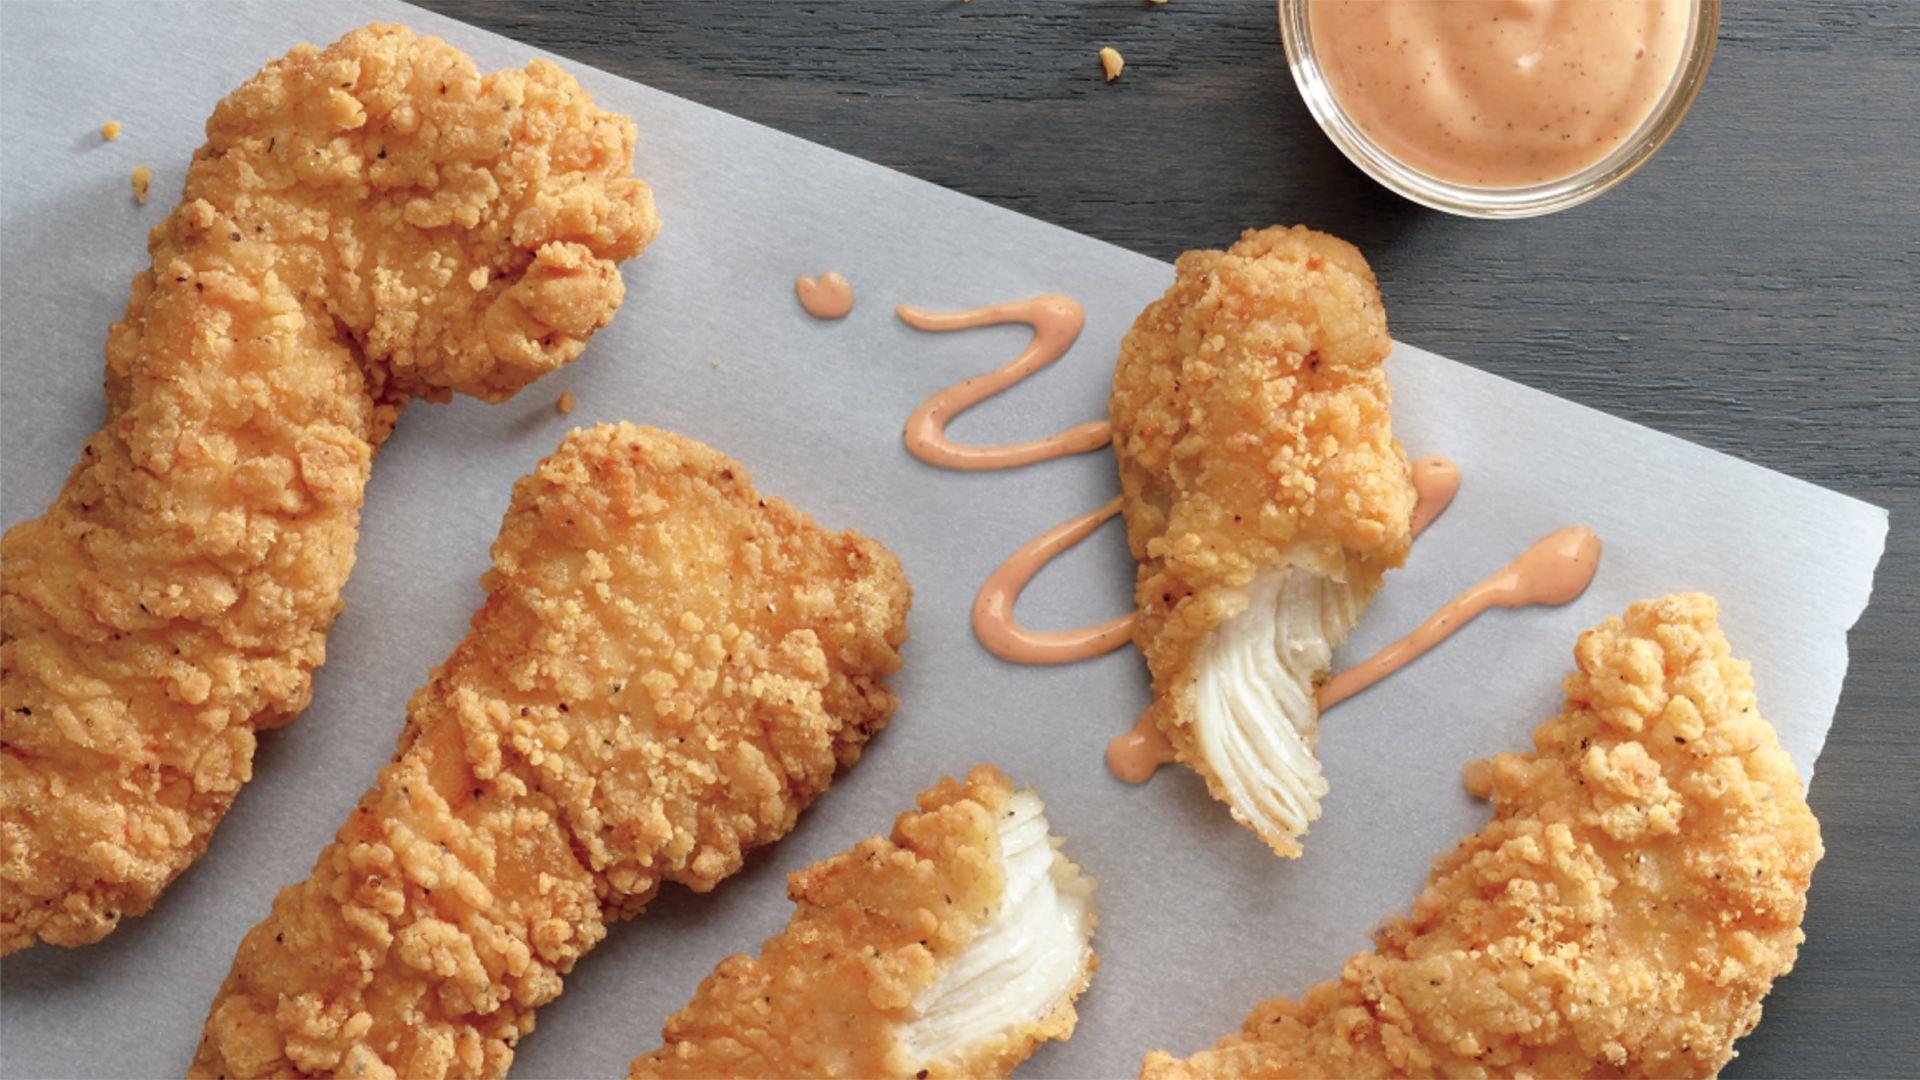 McDonald's unveils Crispy Buttermilk Chicken Tenders